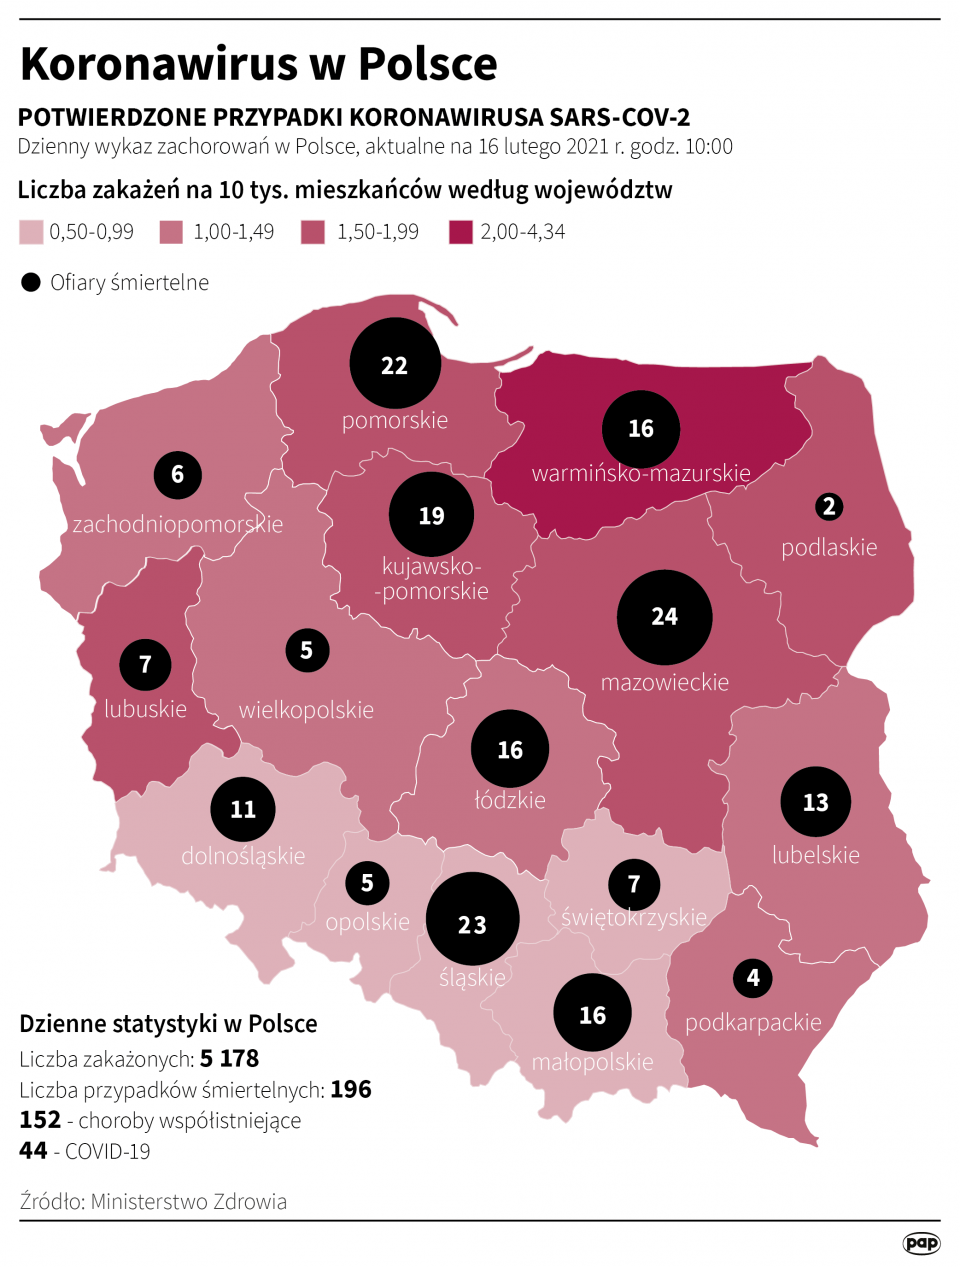 Koronawirus w Polsce stan na 16 lutego [autor: Maria Samczuk, źródło: PAP]